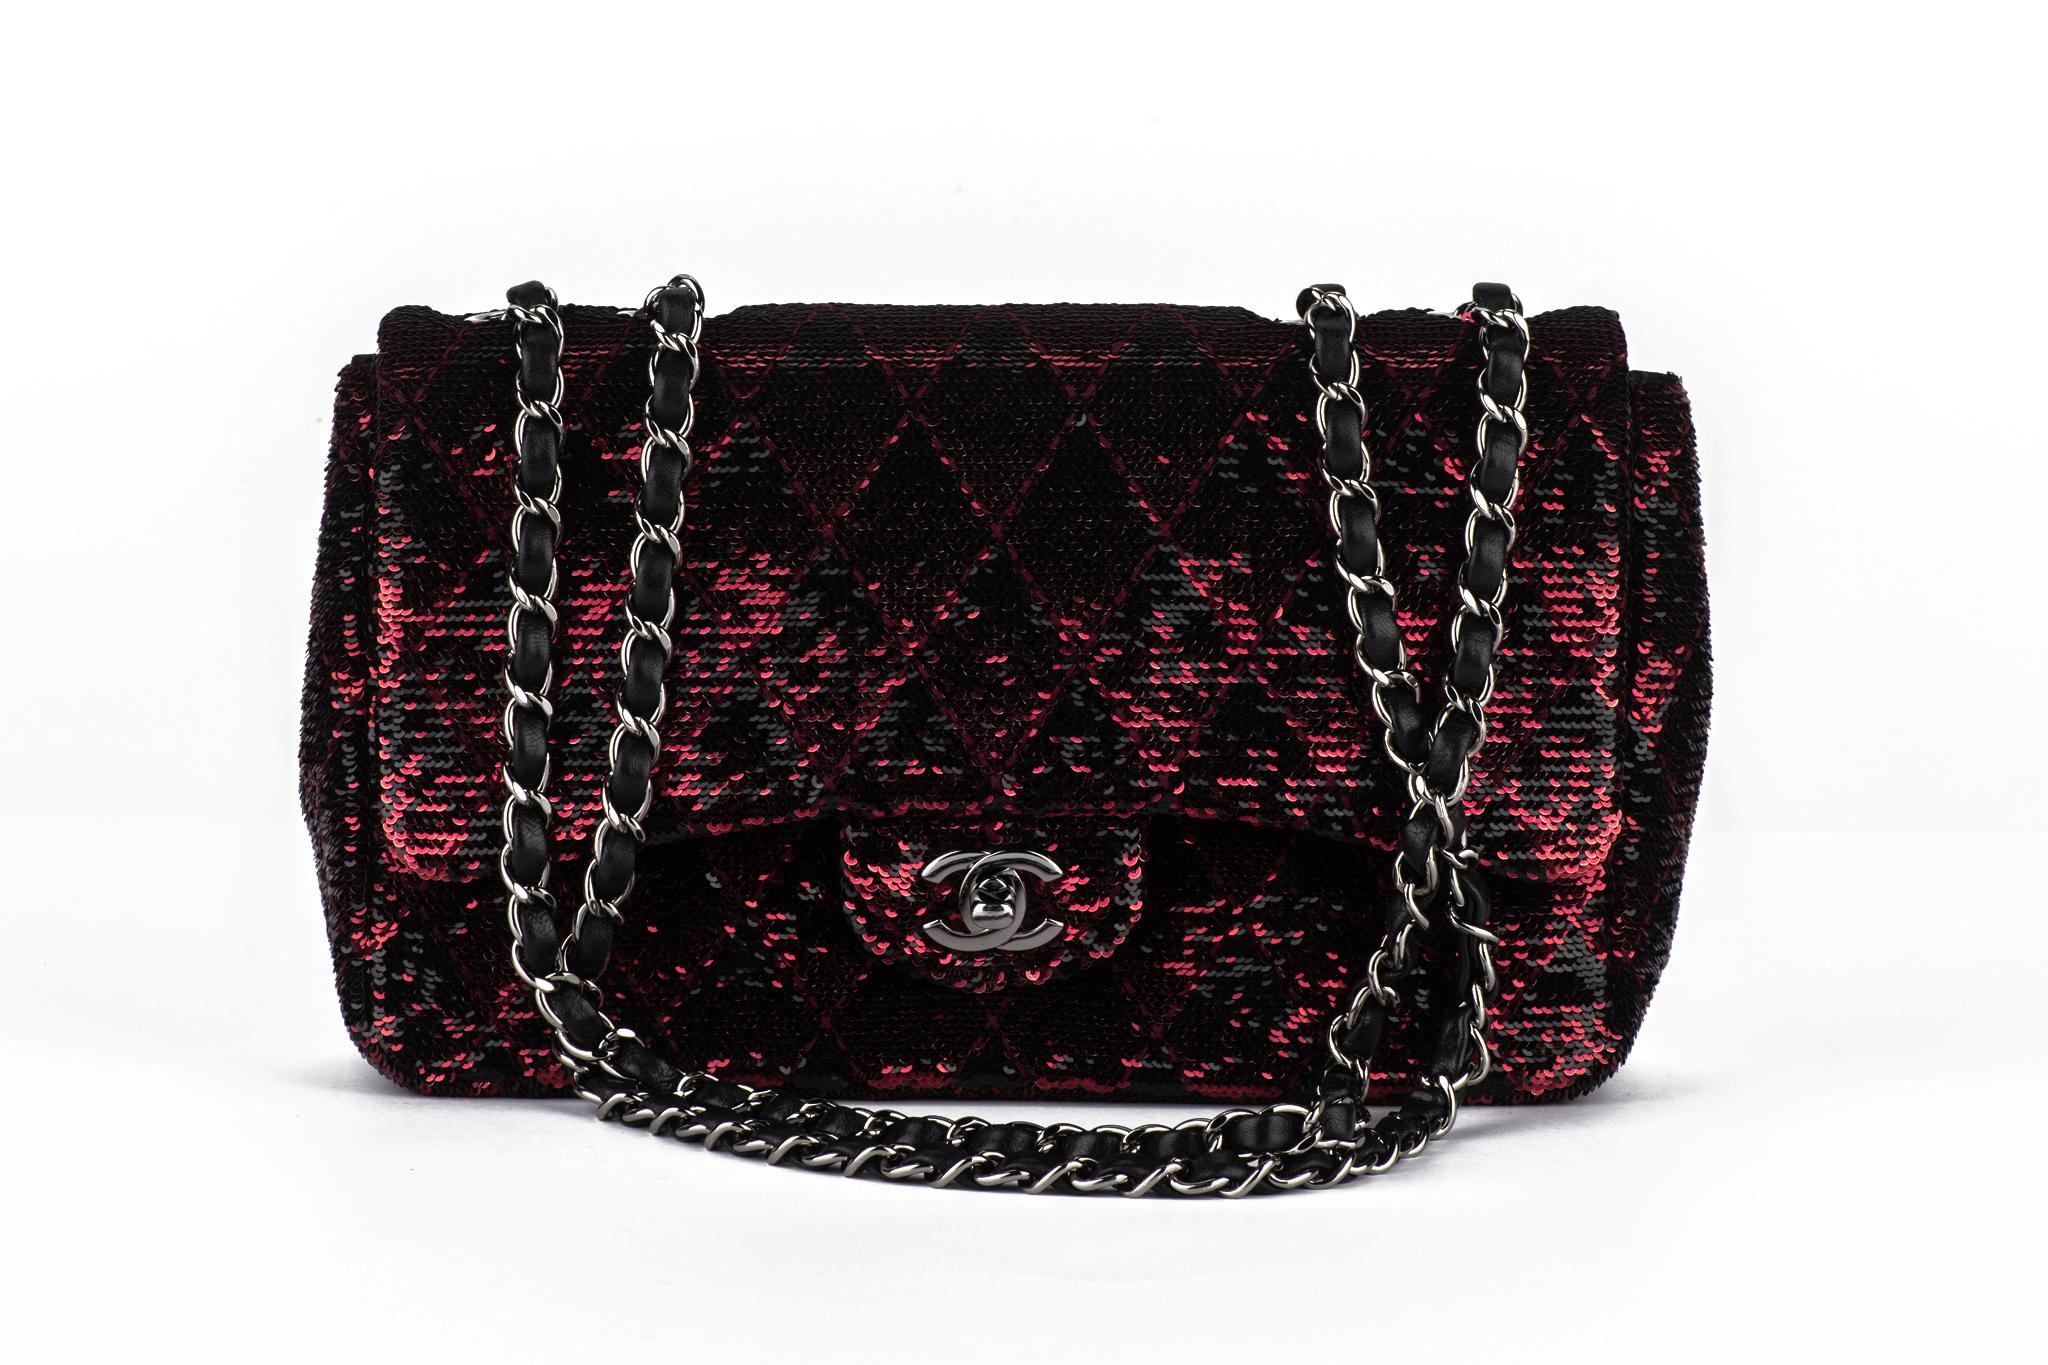 Chanel authentique intemporel à simple rabat en cuir noir et paillettes rouges. Matériel de couleur argent. 
Collectional 24. Poignée de 11.5